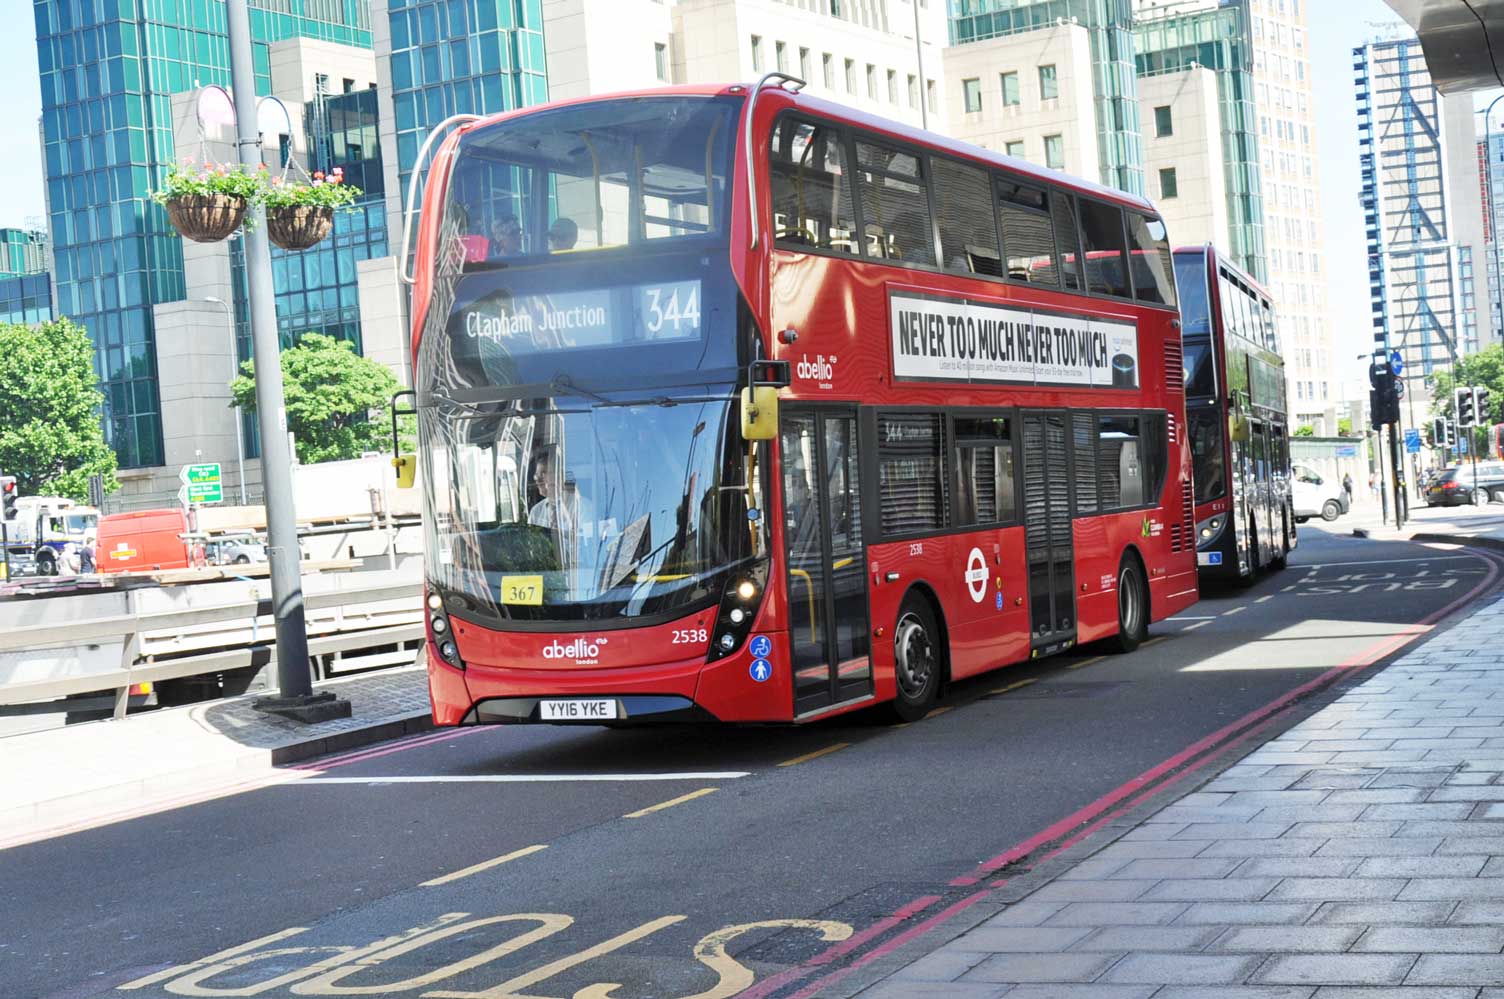 london-bus-route-344